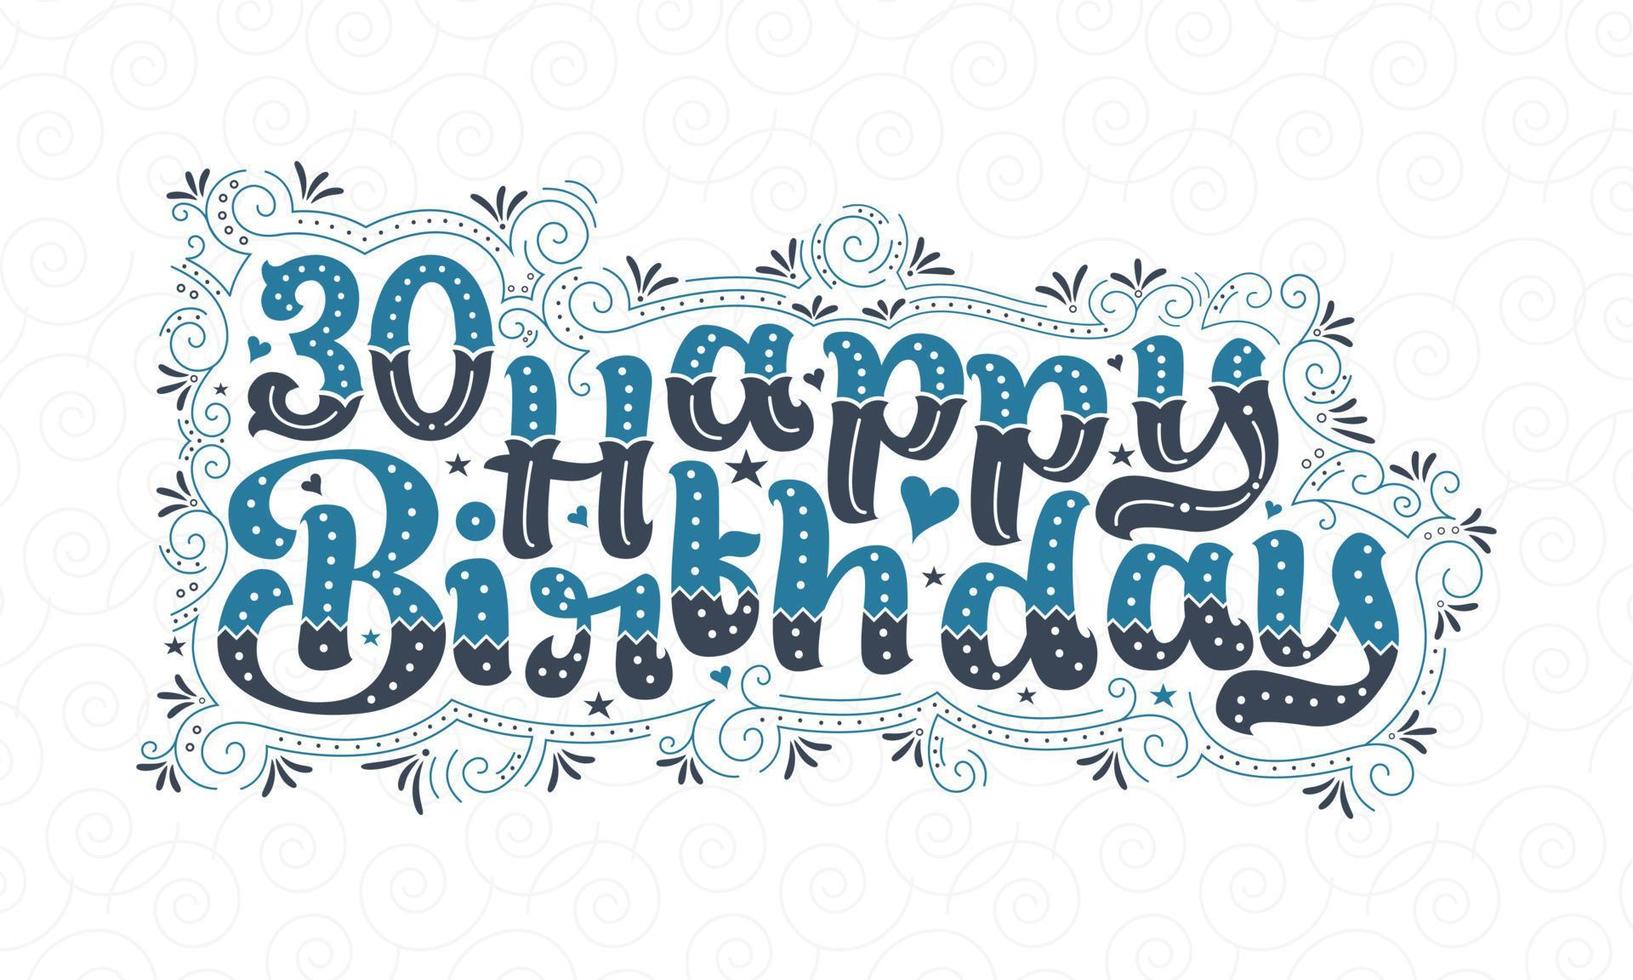 30:e grattis på födelsedagen bokstäver, 30 år födelsedag vacker typografi design med blå och svarta prickar, linjer och blad. vektor